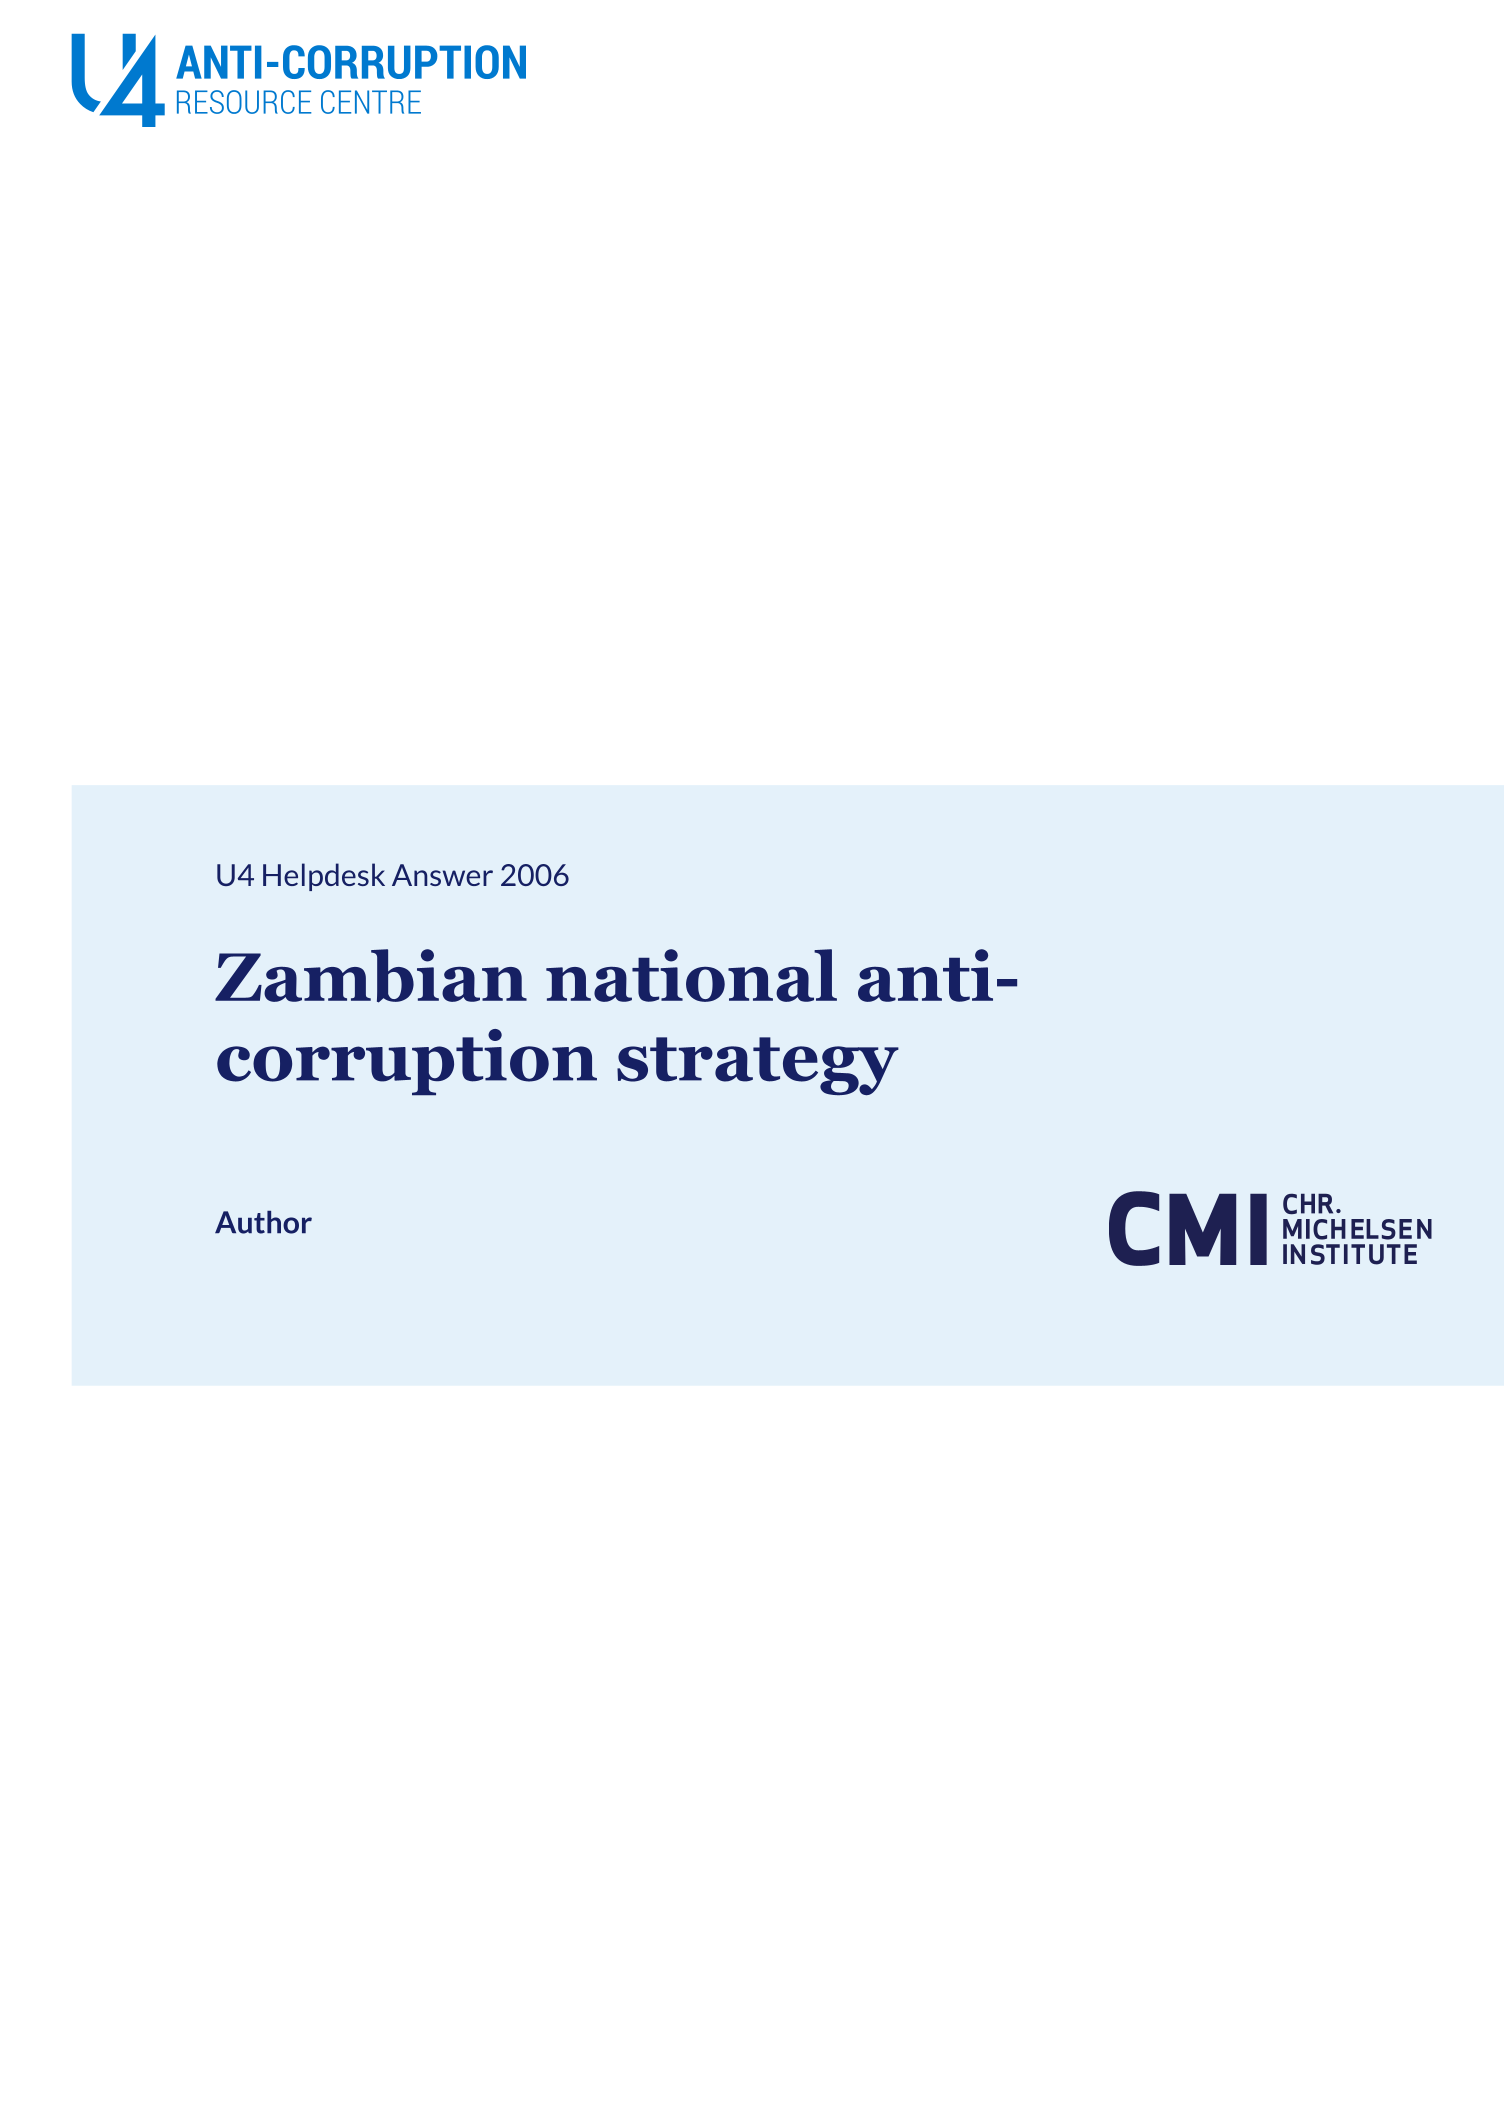 Zambian national anti-corruption strategy